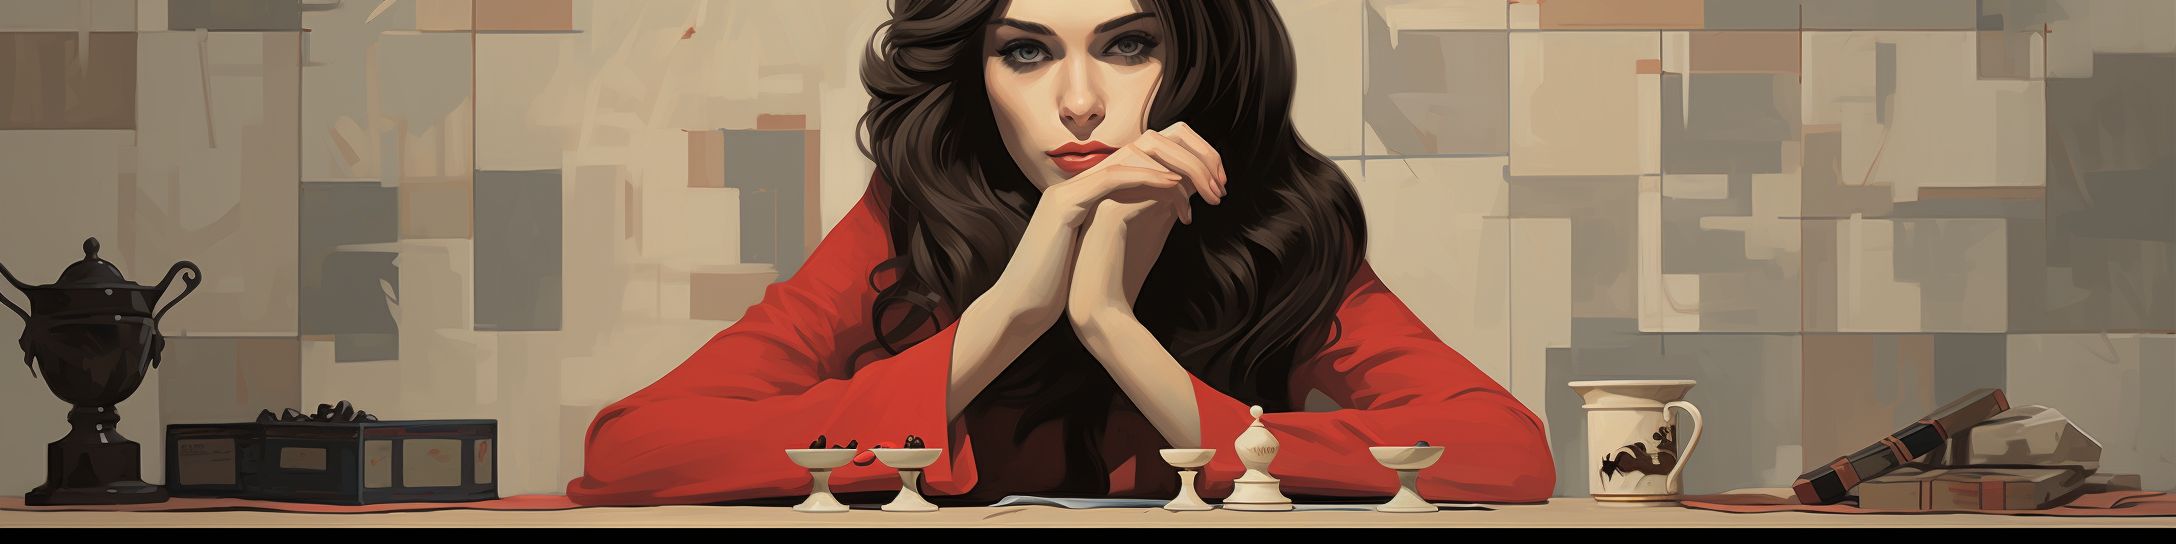 Règne prolongé de Maia dans les échecs féminins